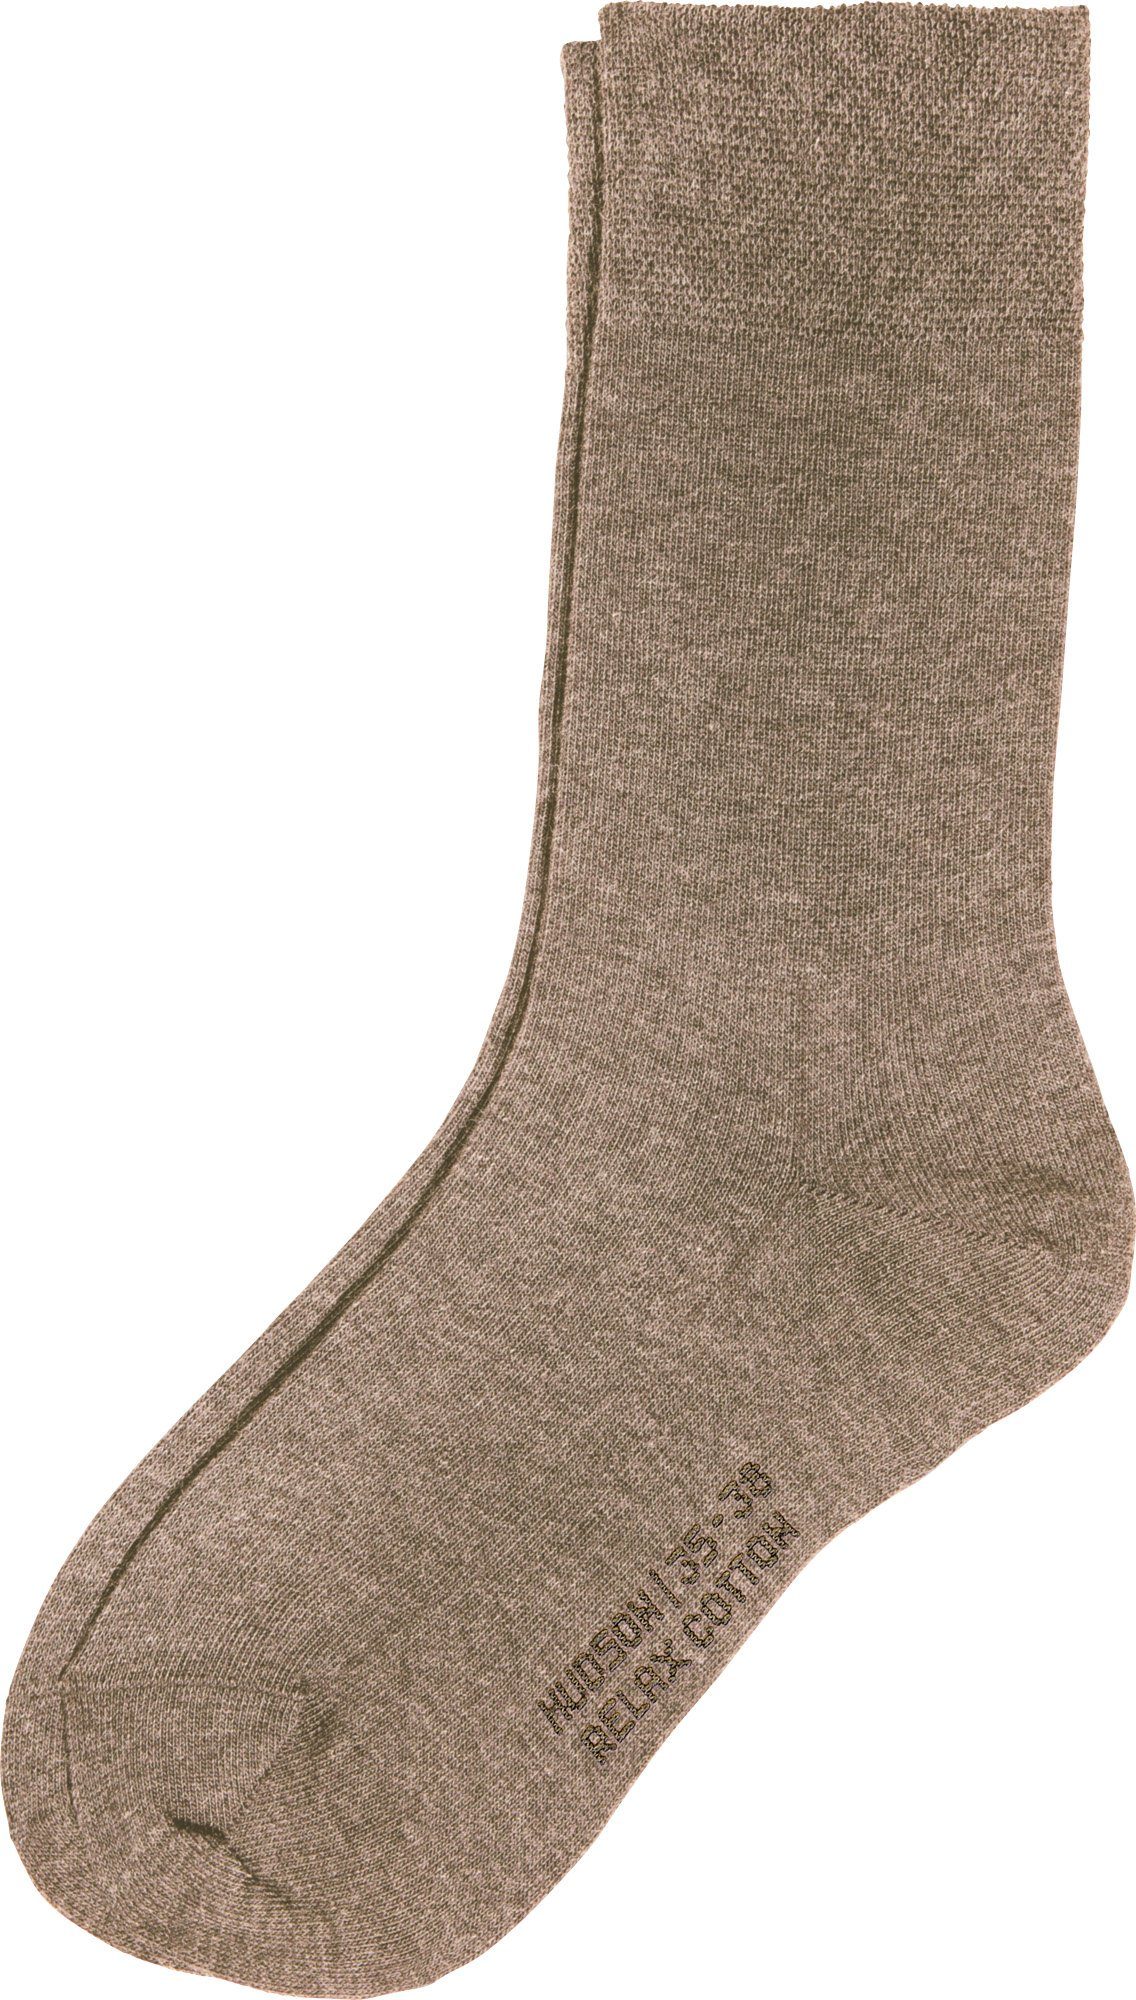 Hudson Socken Damen-Socken 1 Paar mit Softbund Uni taupe meliert